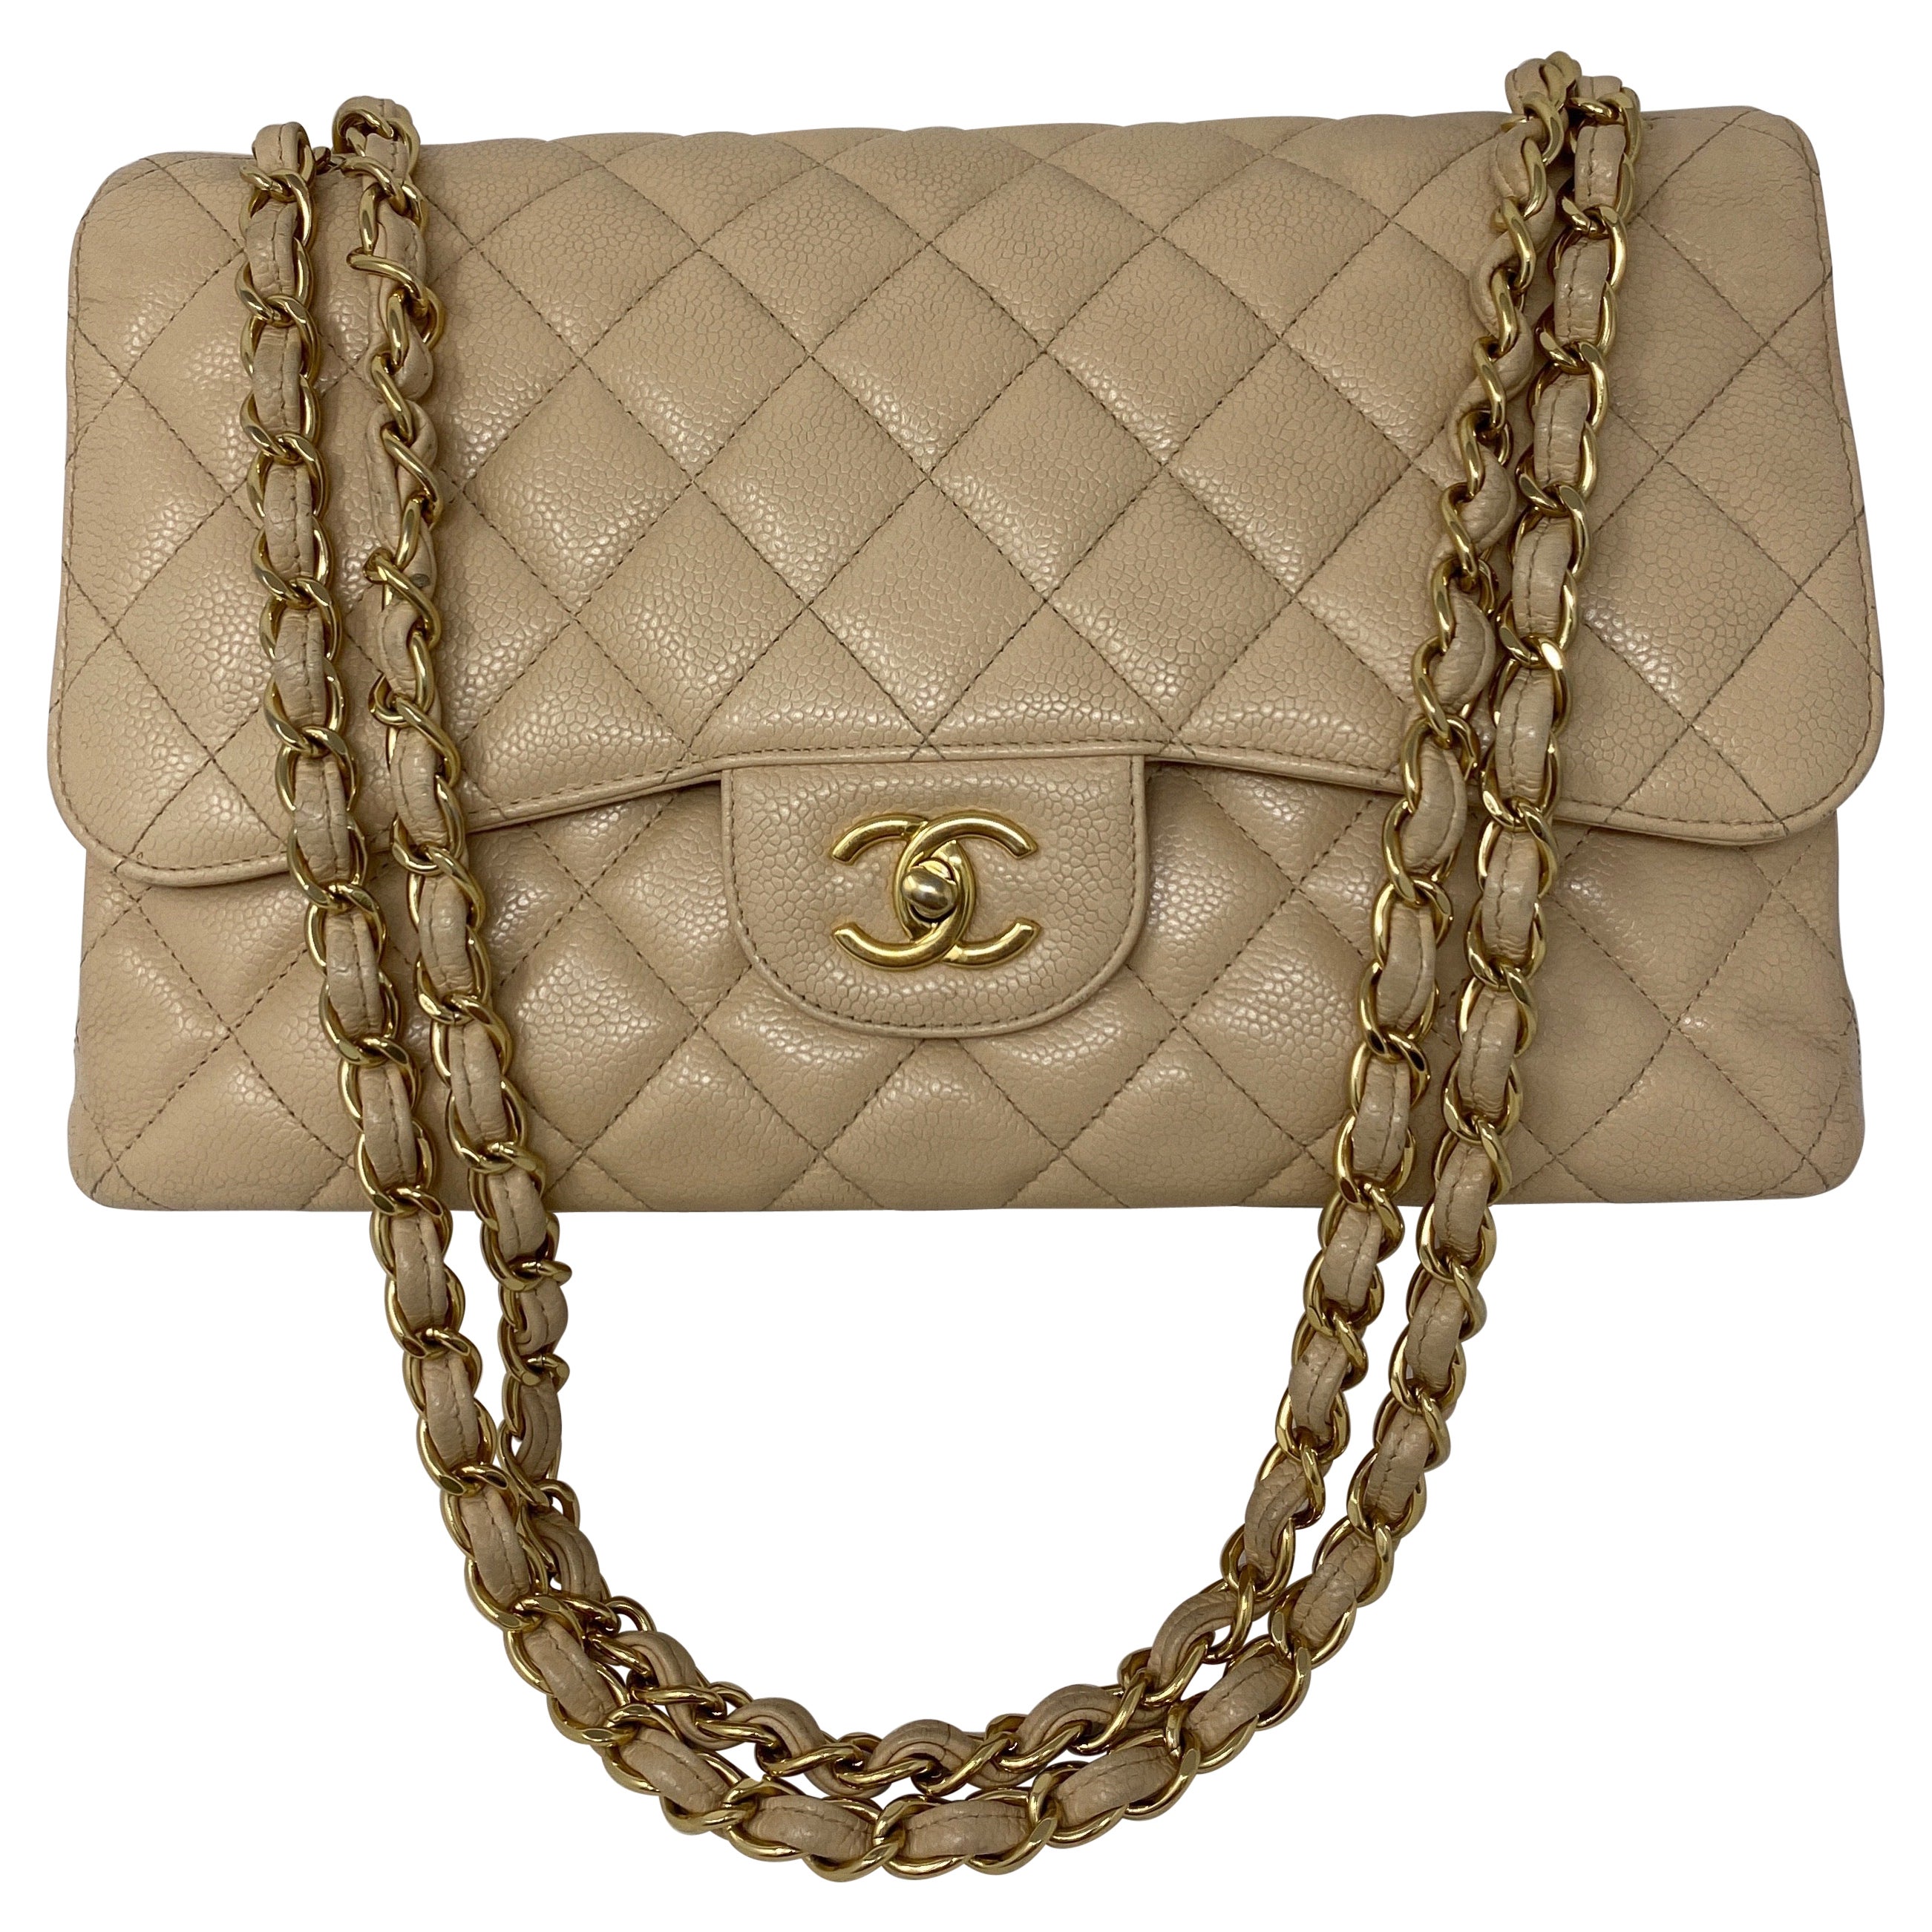 Chanel Cream Jumbo Double Flap Bag 